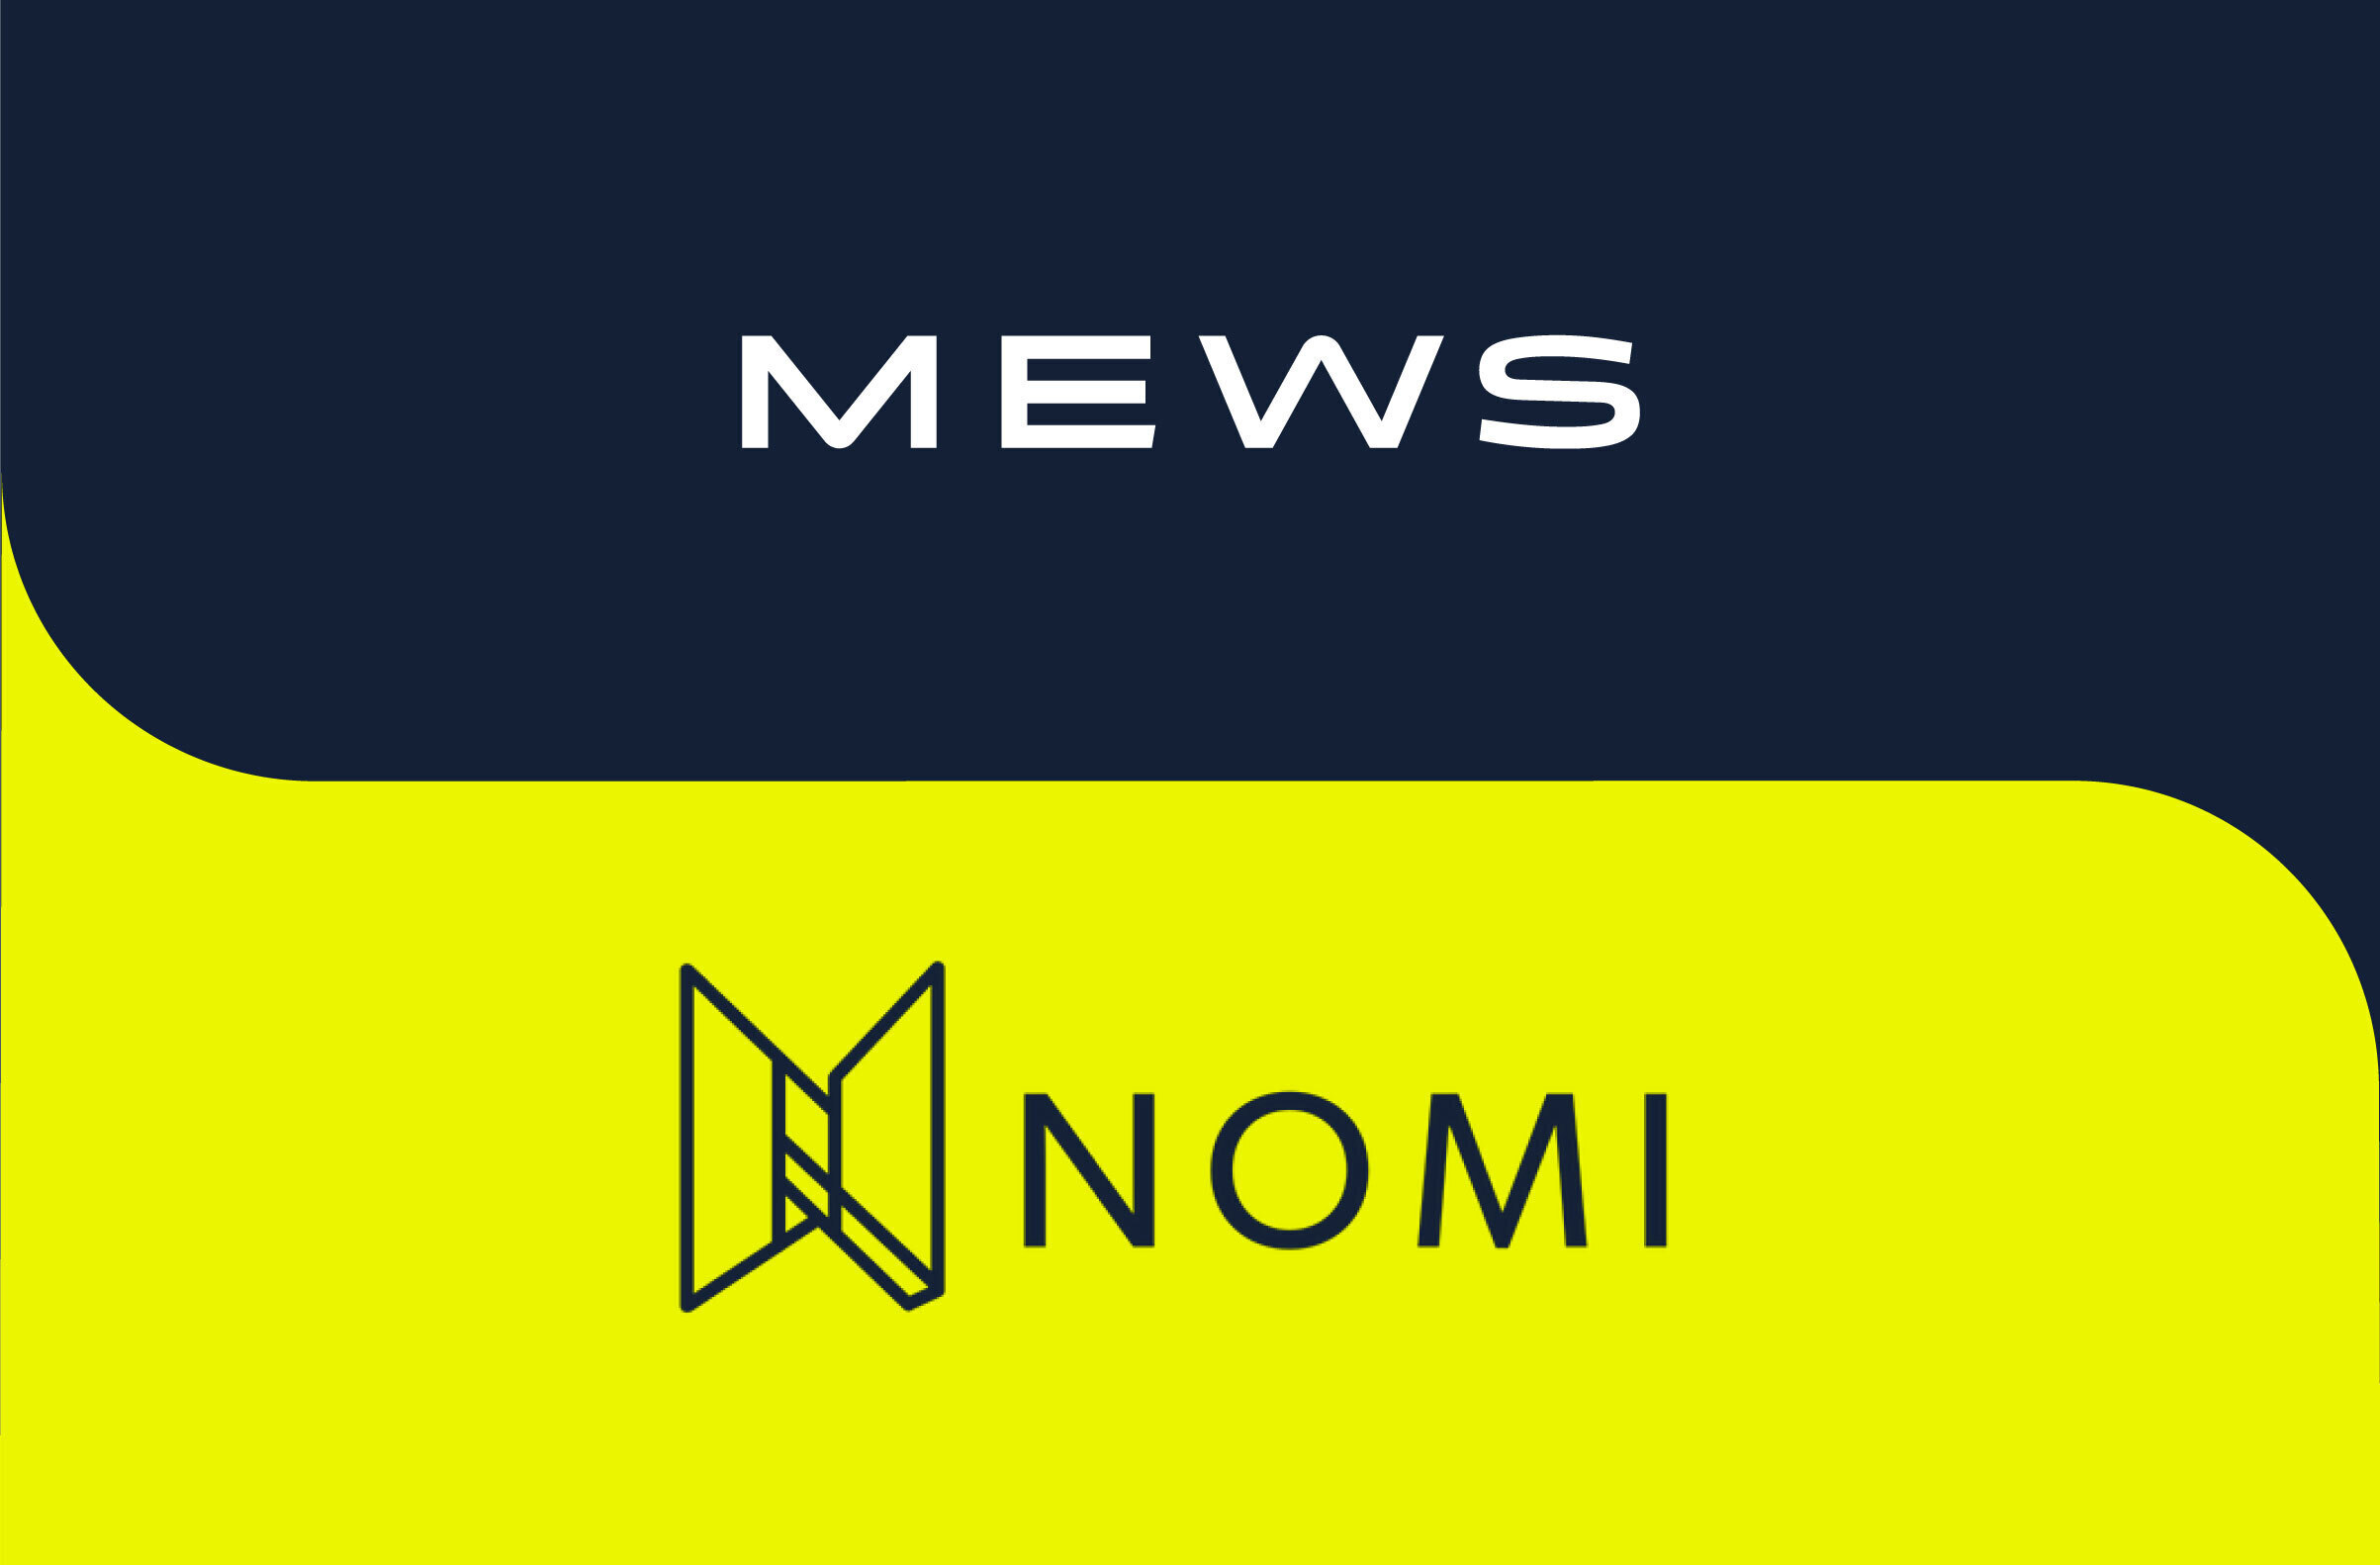 Mews acquires Nomi to accelerate AI